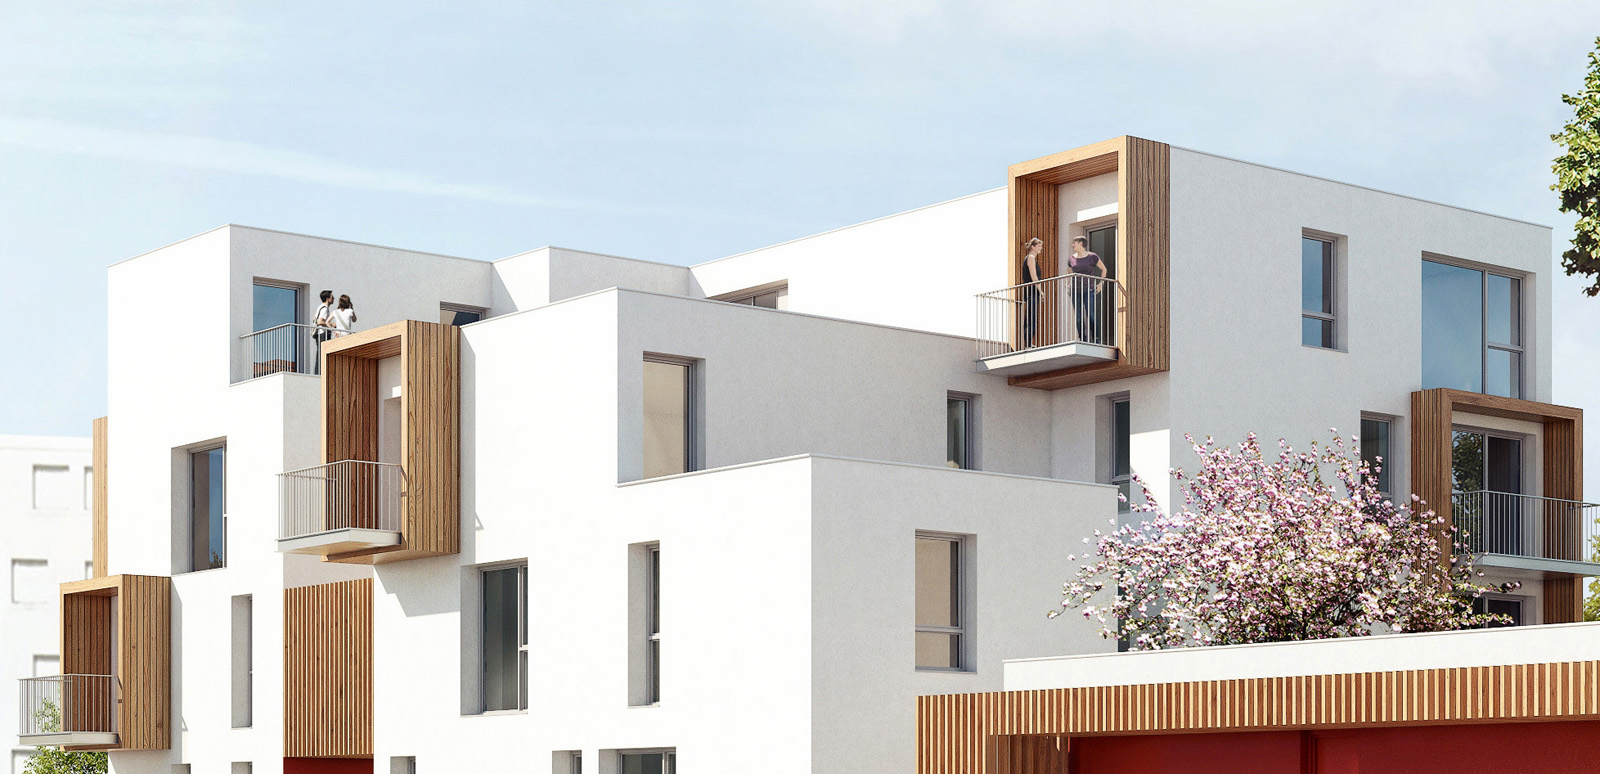  CITE SOLEIL LEVANT  construction de 19 logements sociaux locatifs et d'une maison d'accueil de 20 studios Ere Architecture - Architecte Quimperlé - Finistère